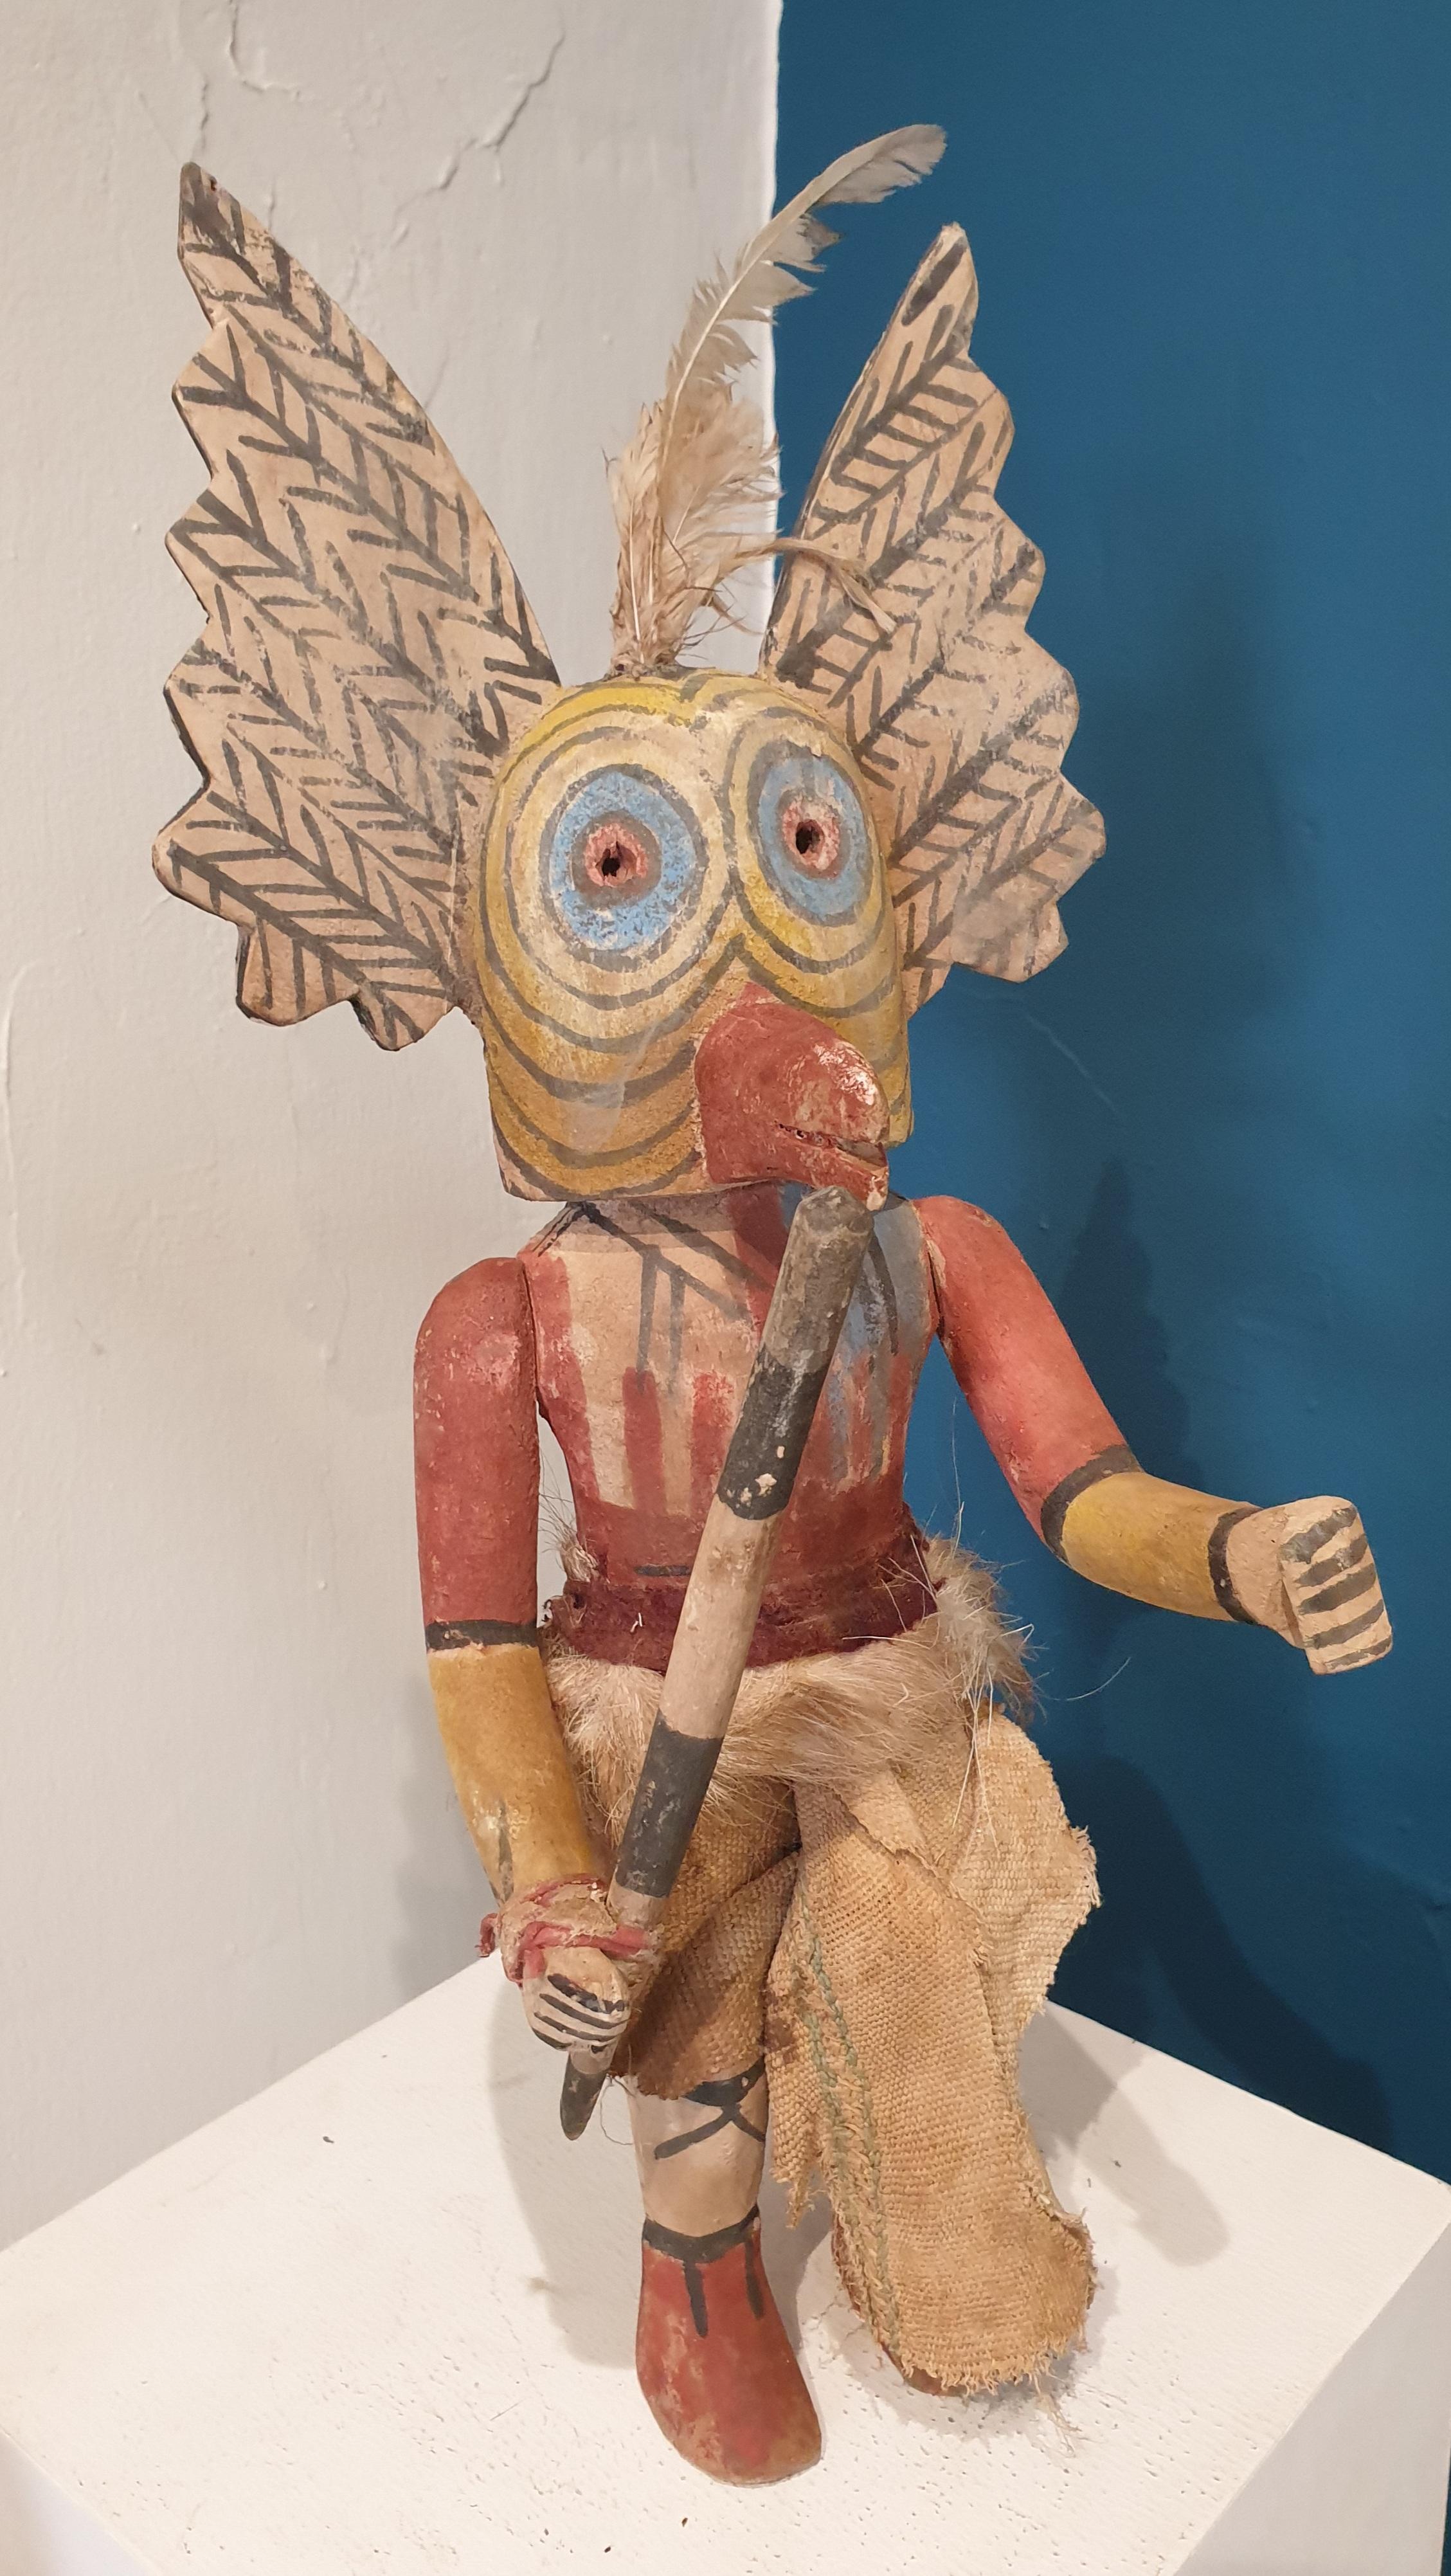 Effigie en bois sculpté et peint, Hopi/Navajo Katsina ou poupée Kachina, originaire d'Amérique du Nord. 

Une poupée Condit particulièrement bien détaillée, en bon état, avec des plumes, une jupe doublée de fourrure, un lien autour du poignet pour